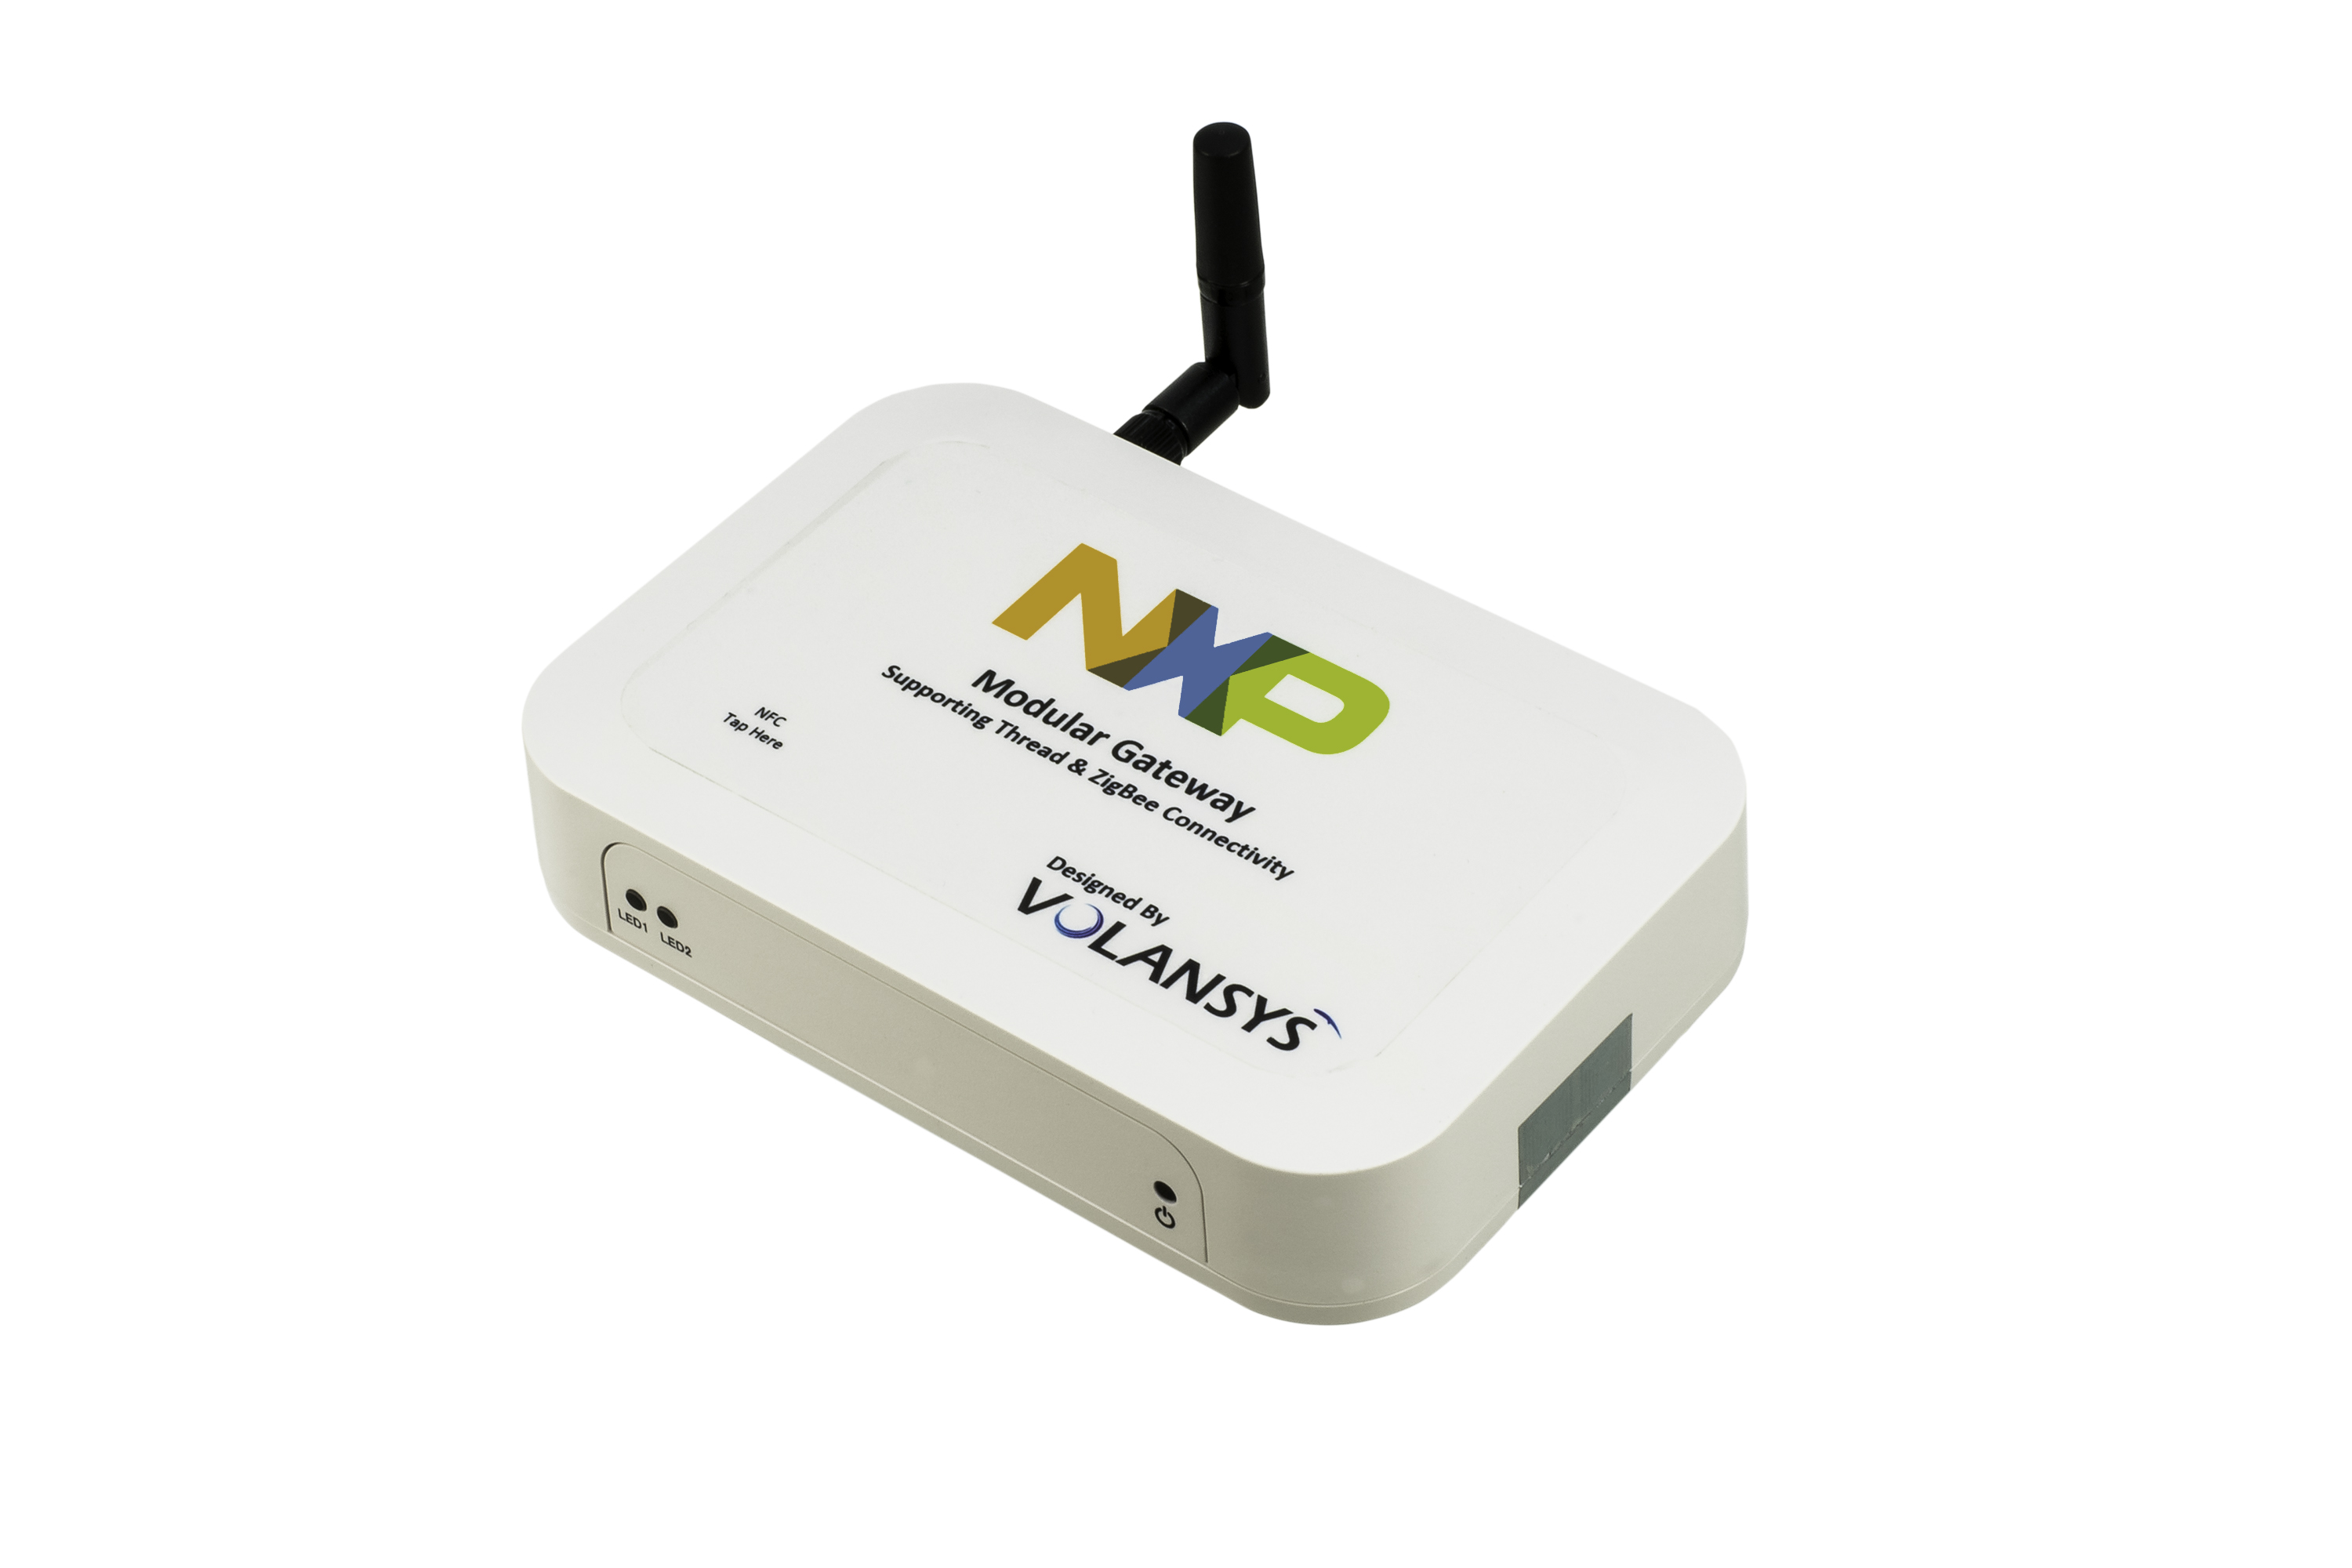 Modular IoT Gateway Reference Design|NXP